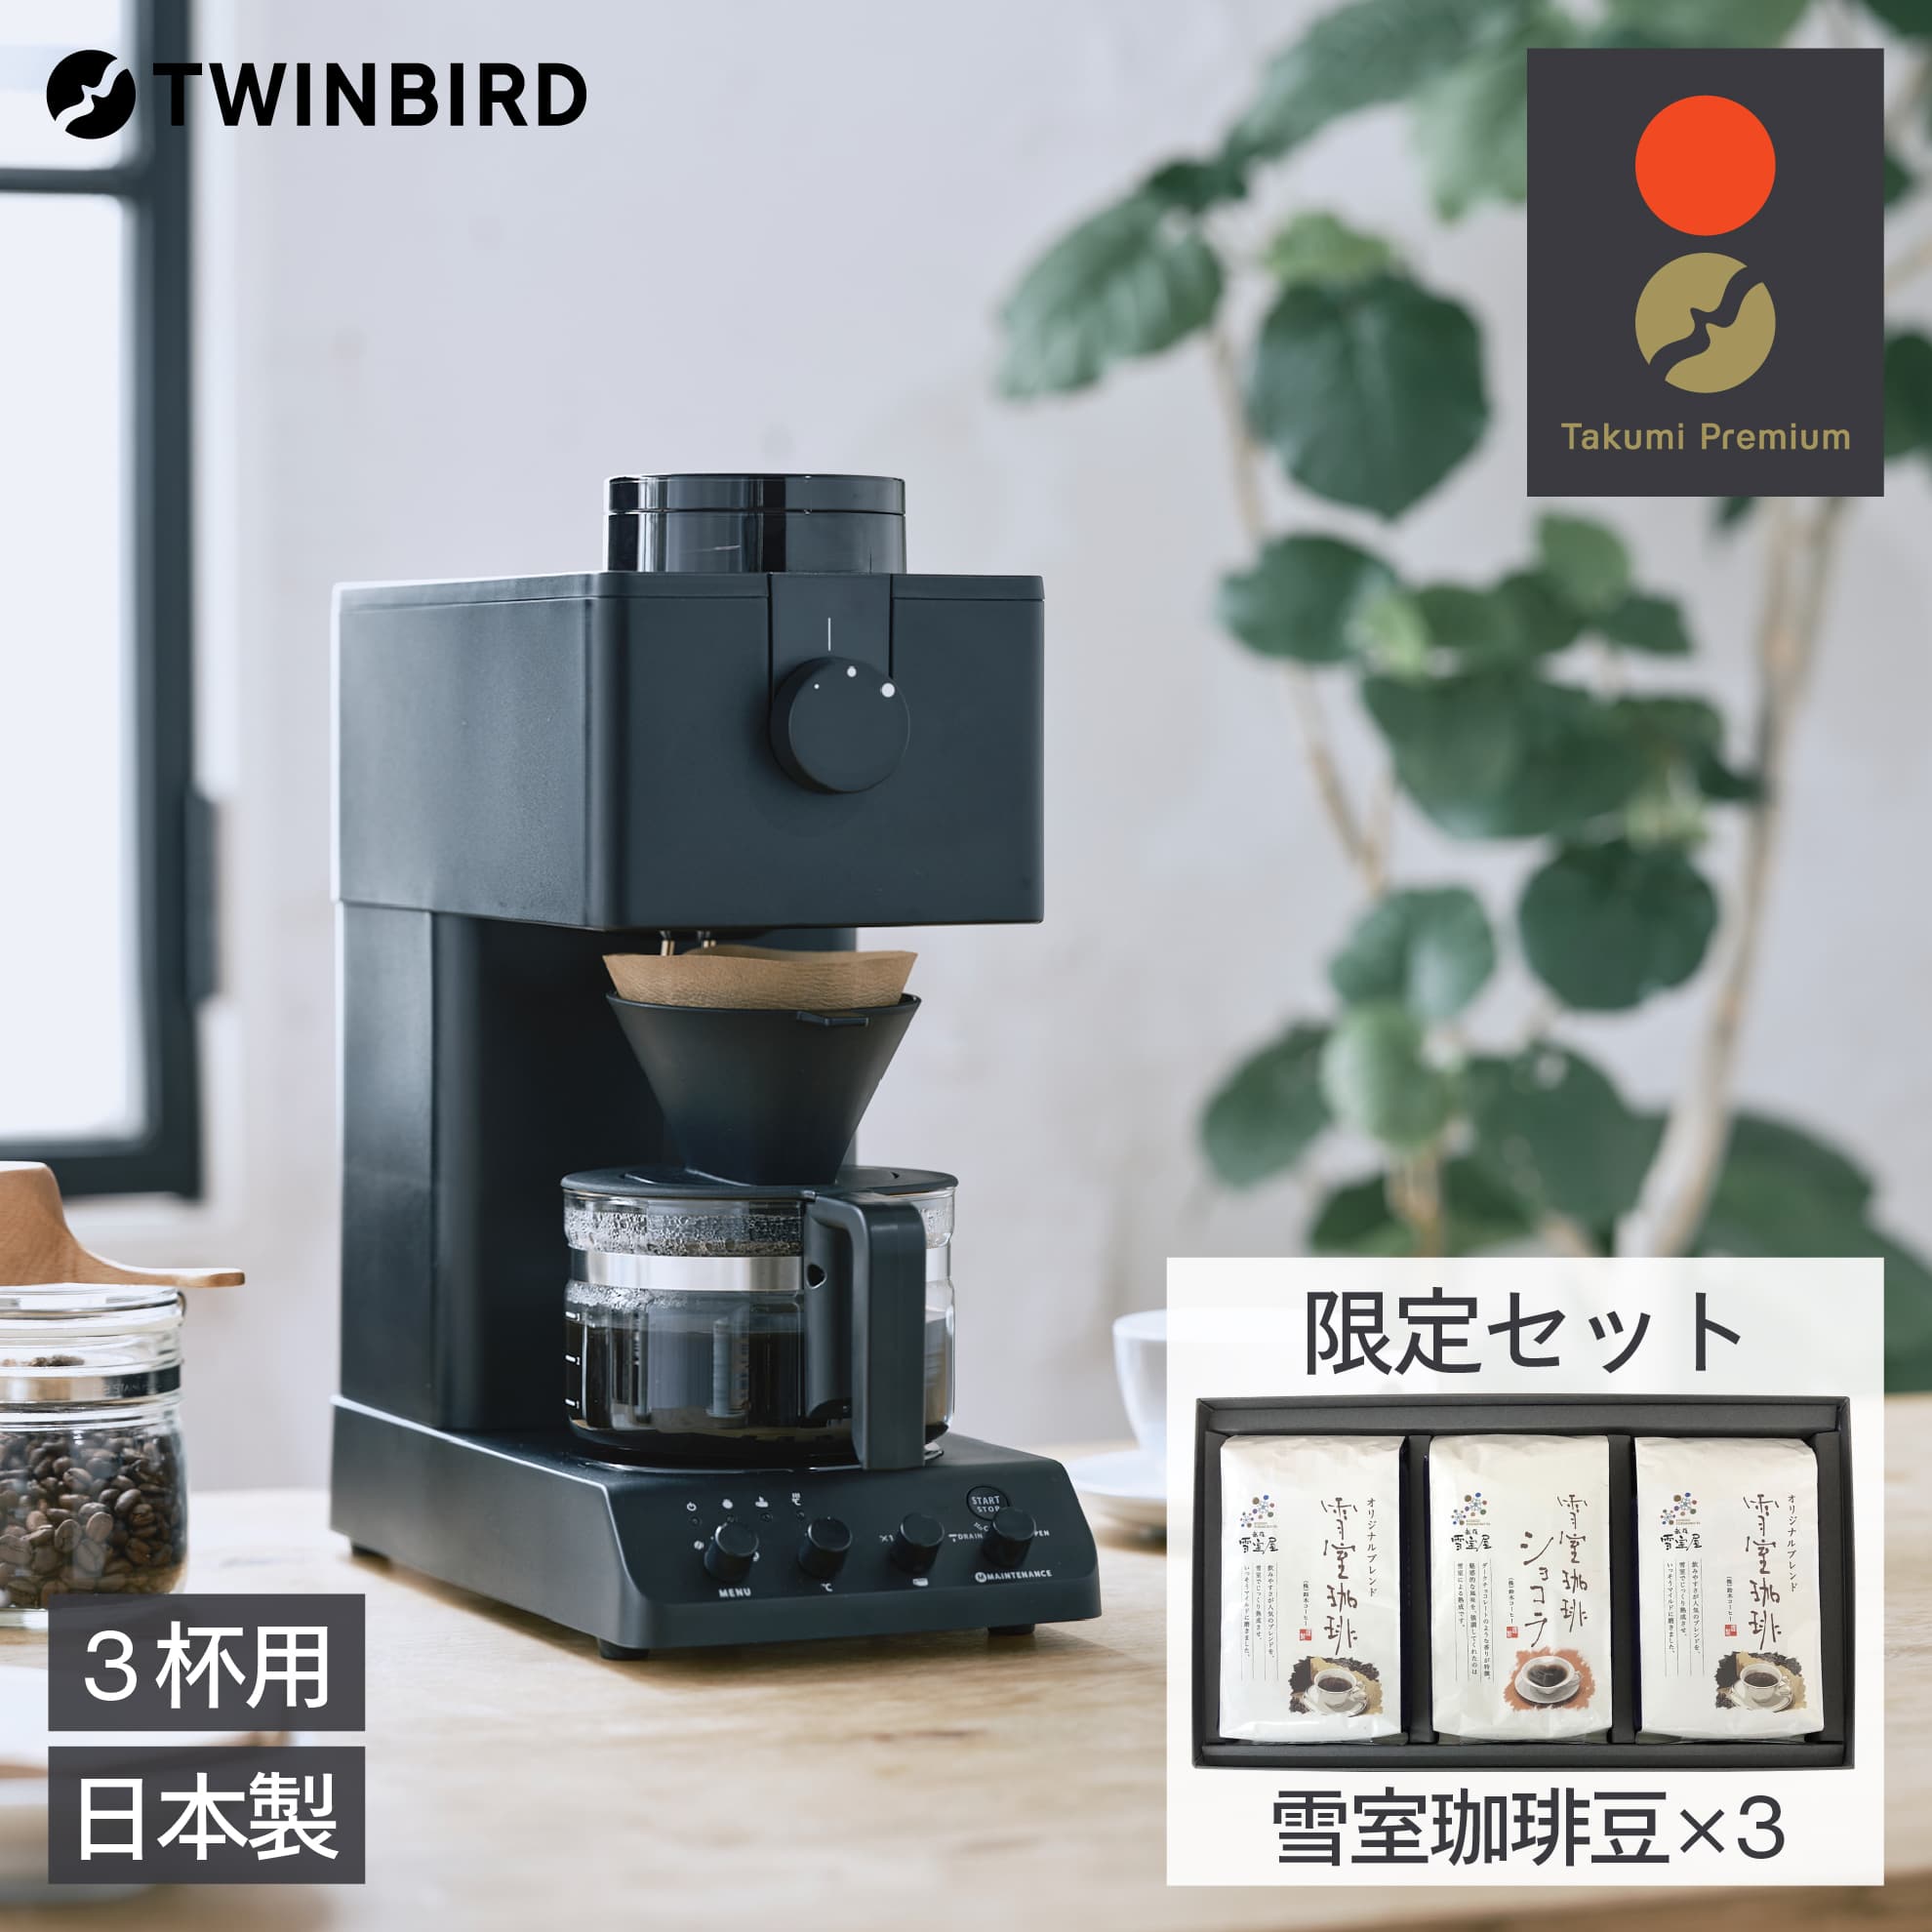 ツインバード 日本製 全自動 コーヒーメーカー 3杯用 雪室珈琲豆 3袋セット